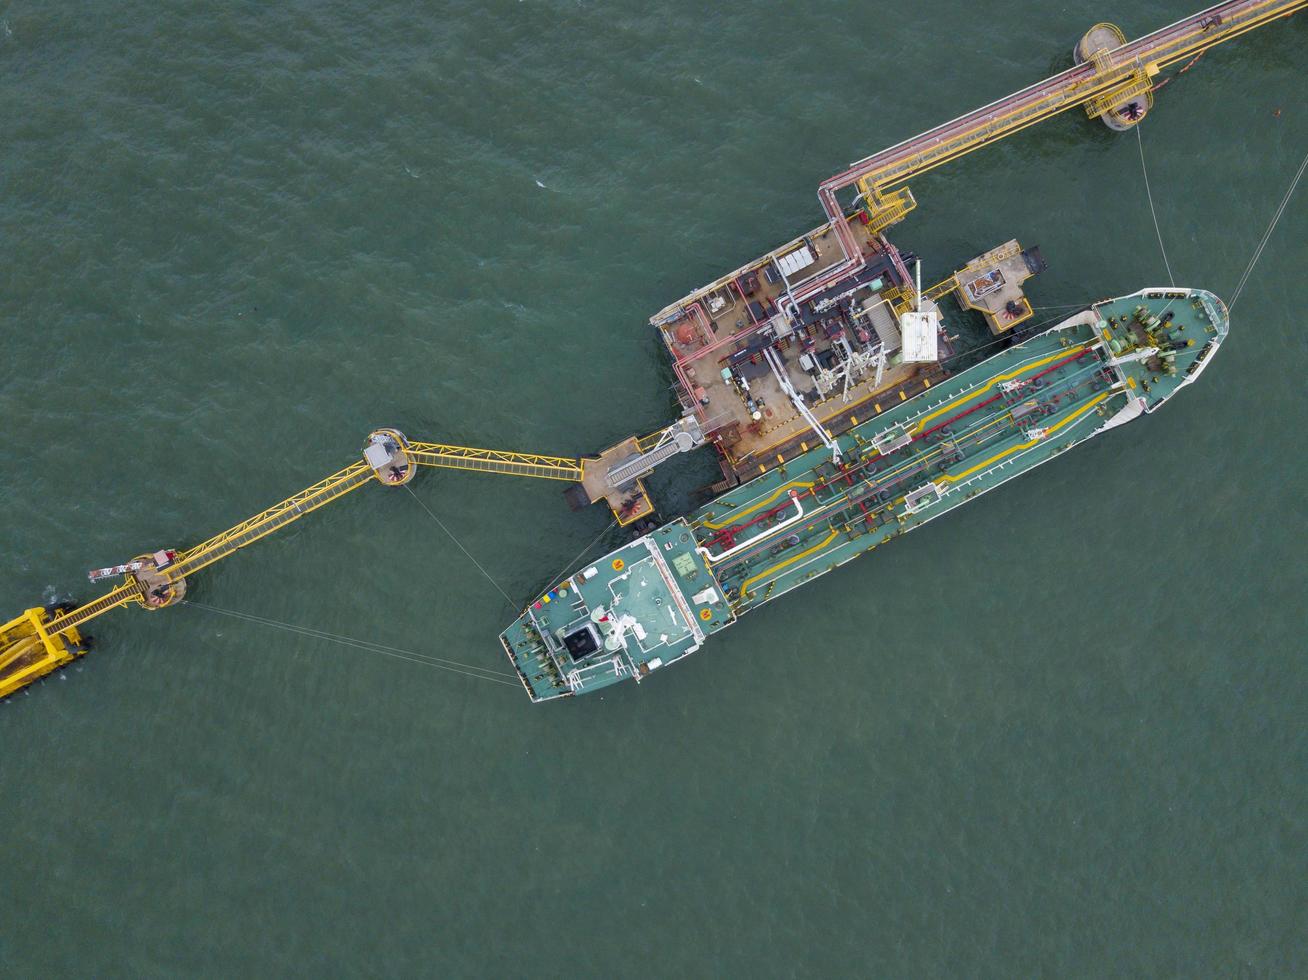 buque cisterna de carga atraque de buques marinos y plataforma de amarre de ultramar para la industria del petróleo y el petróleo crudo desde la vista superior foto